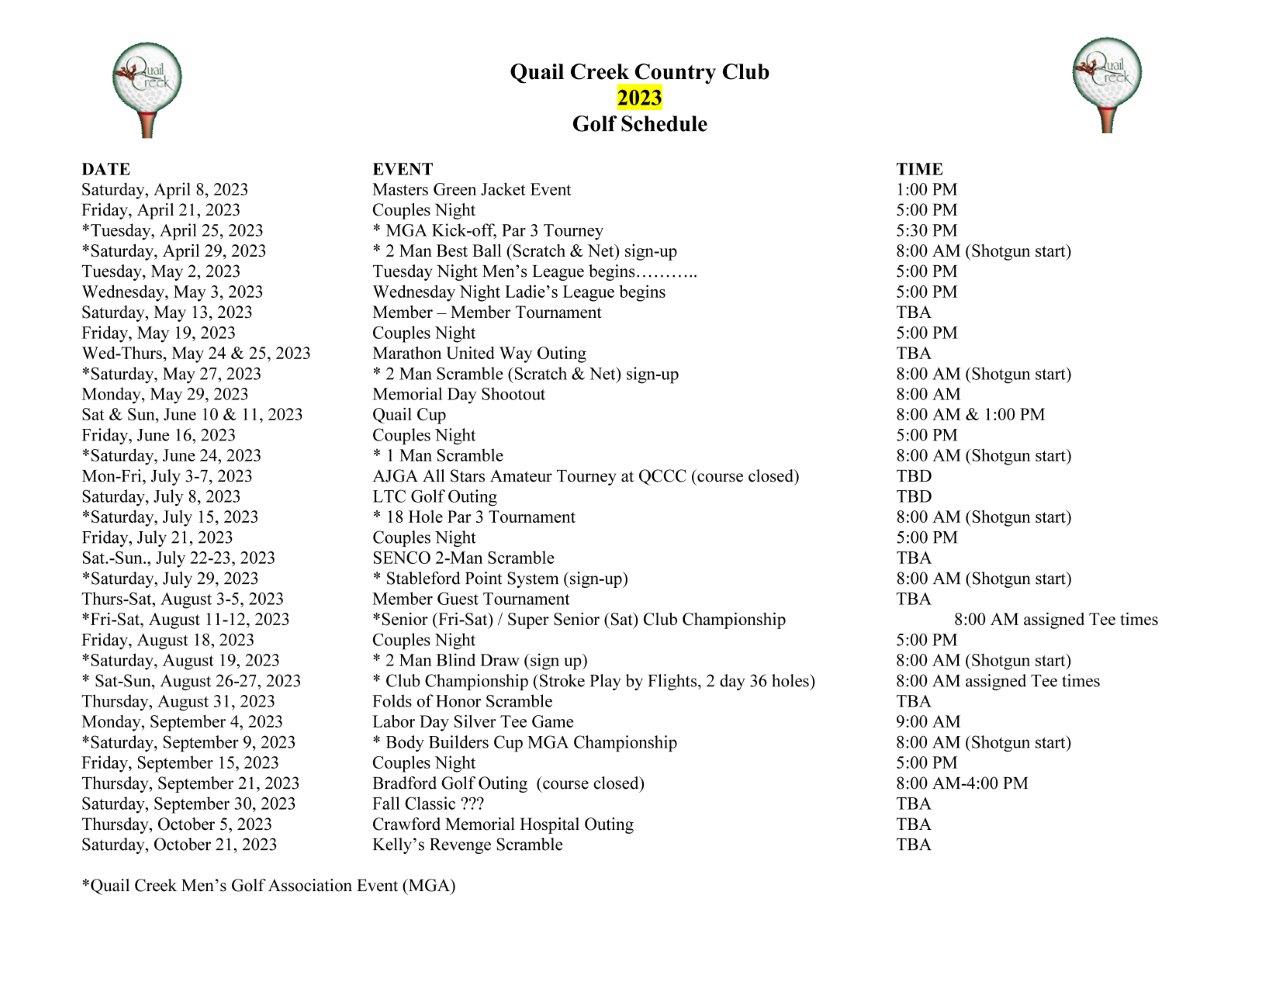 2023 QCCC Golf Schedule